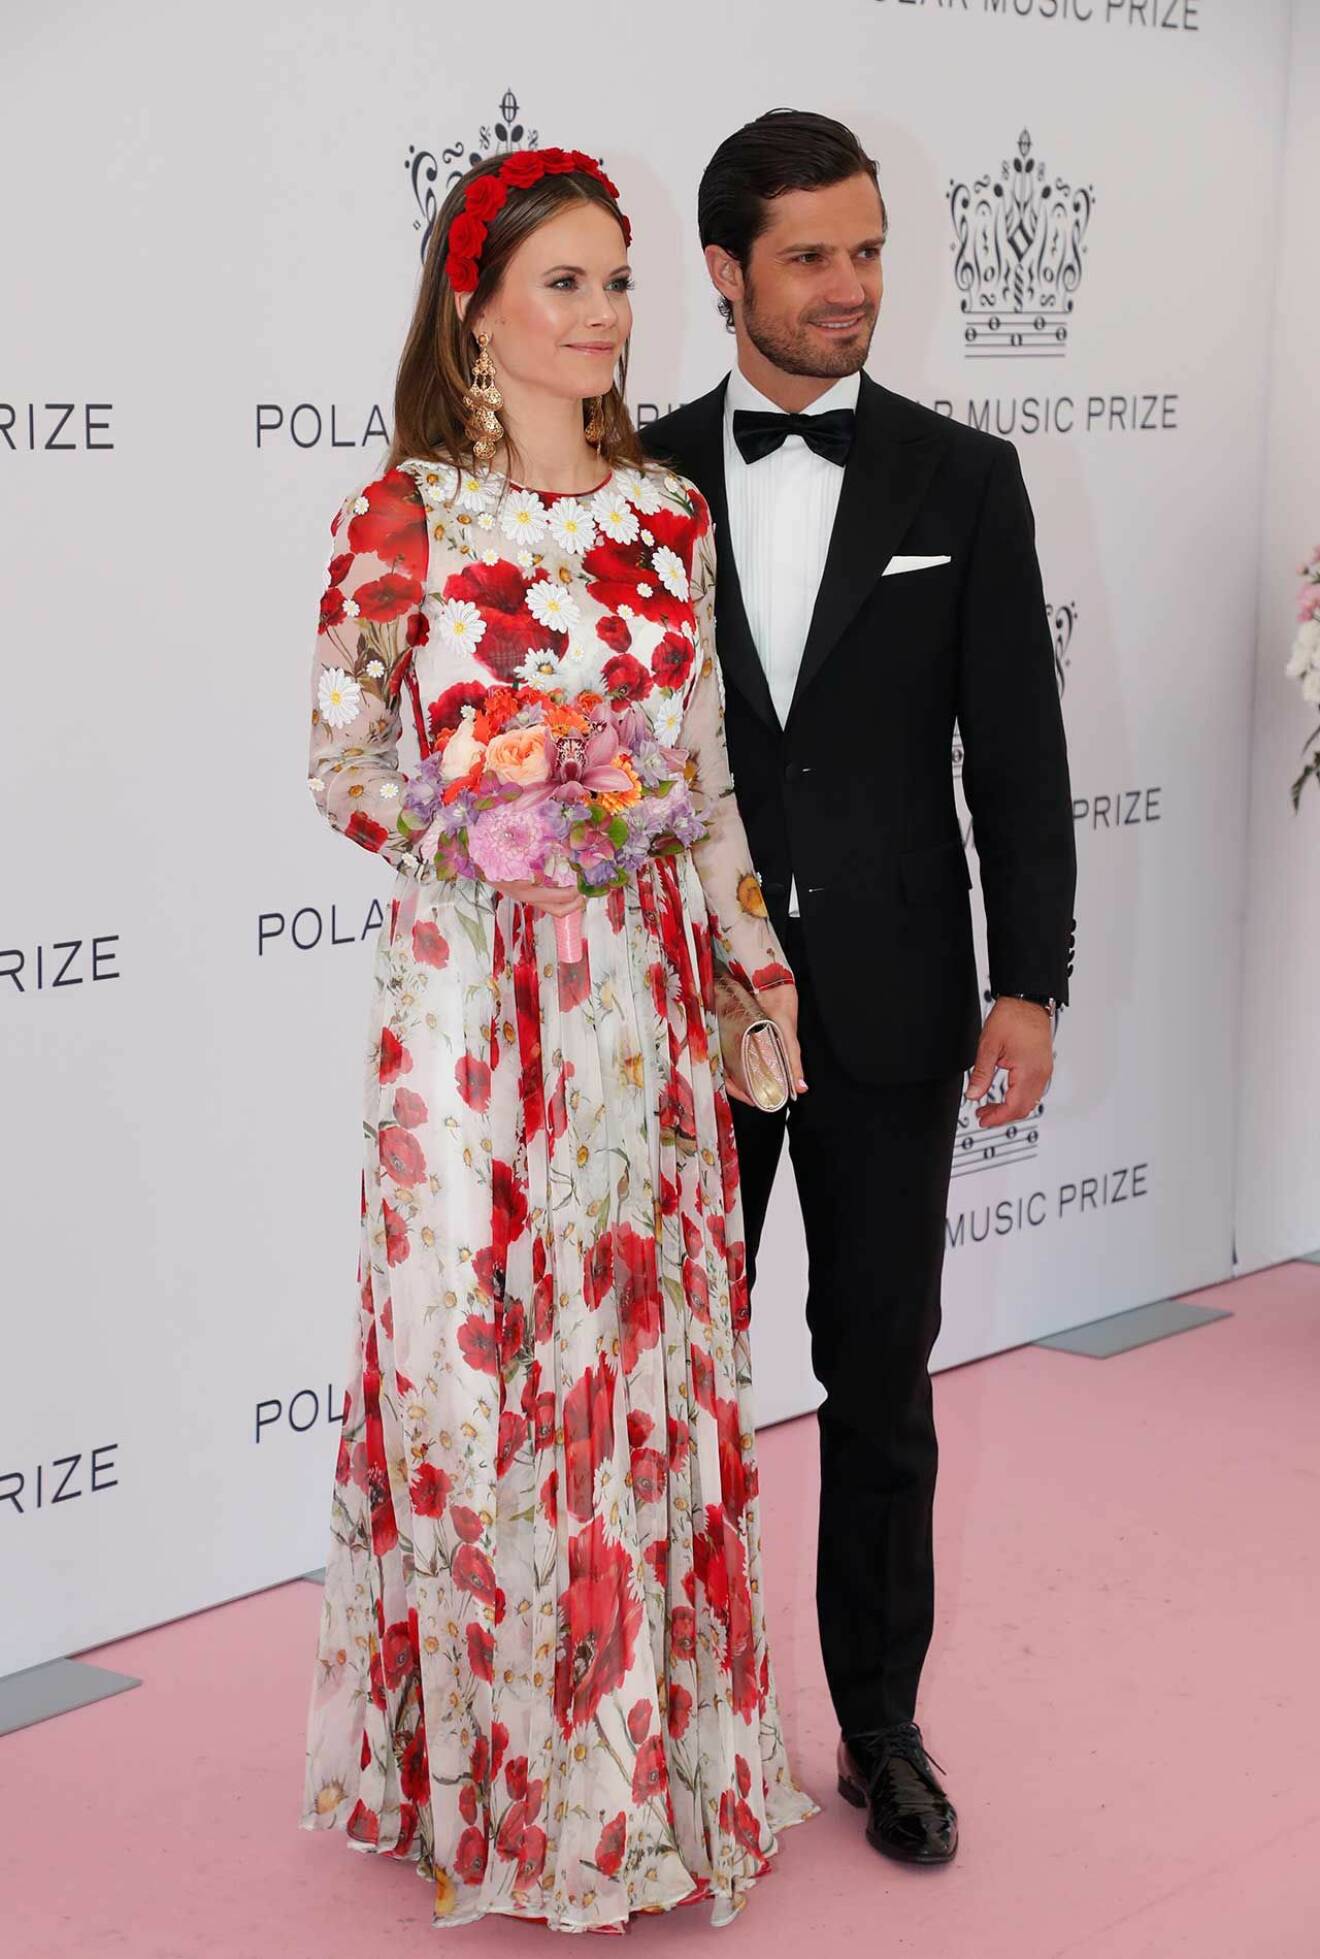 Prinsessan Sofia och prins Carl Philip på den rosa mattan.